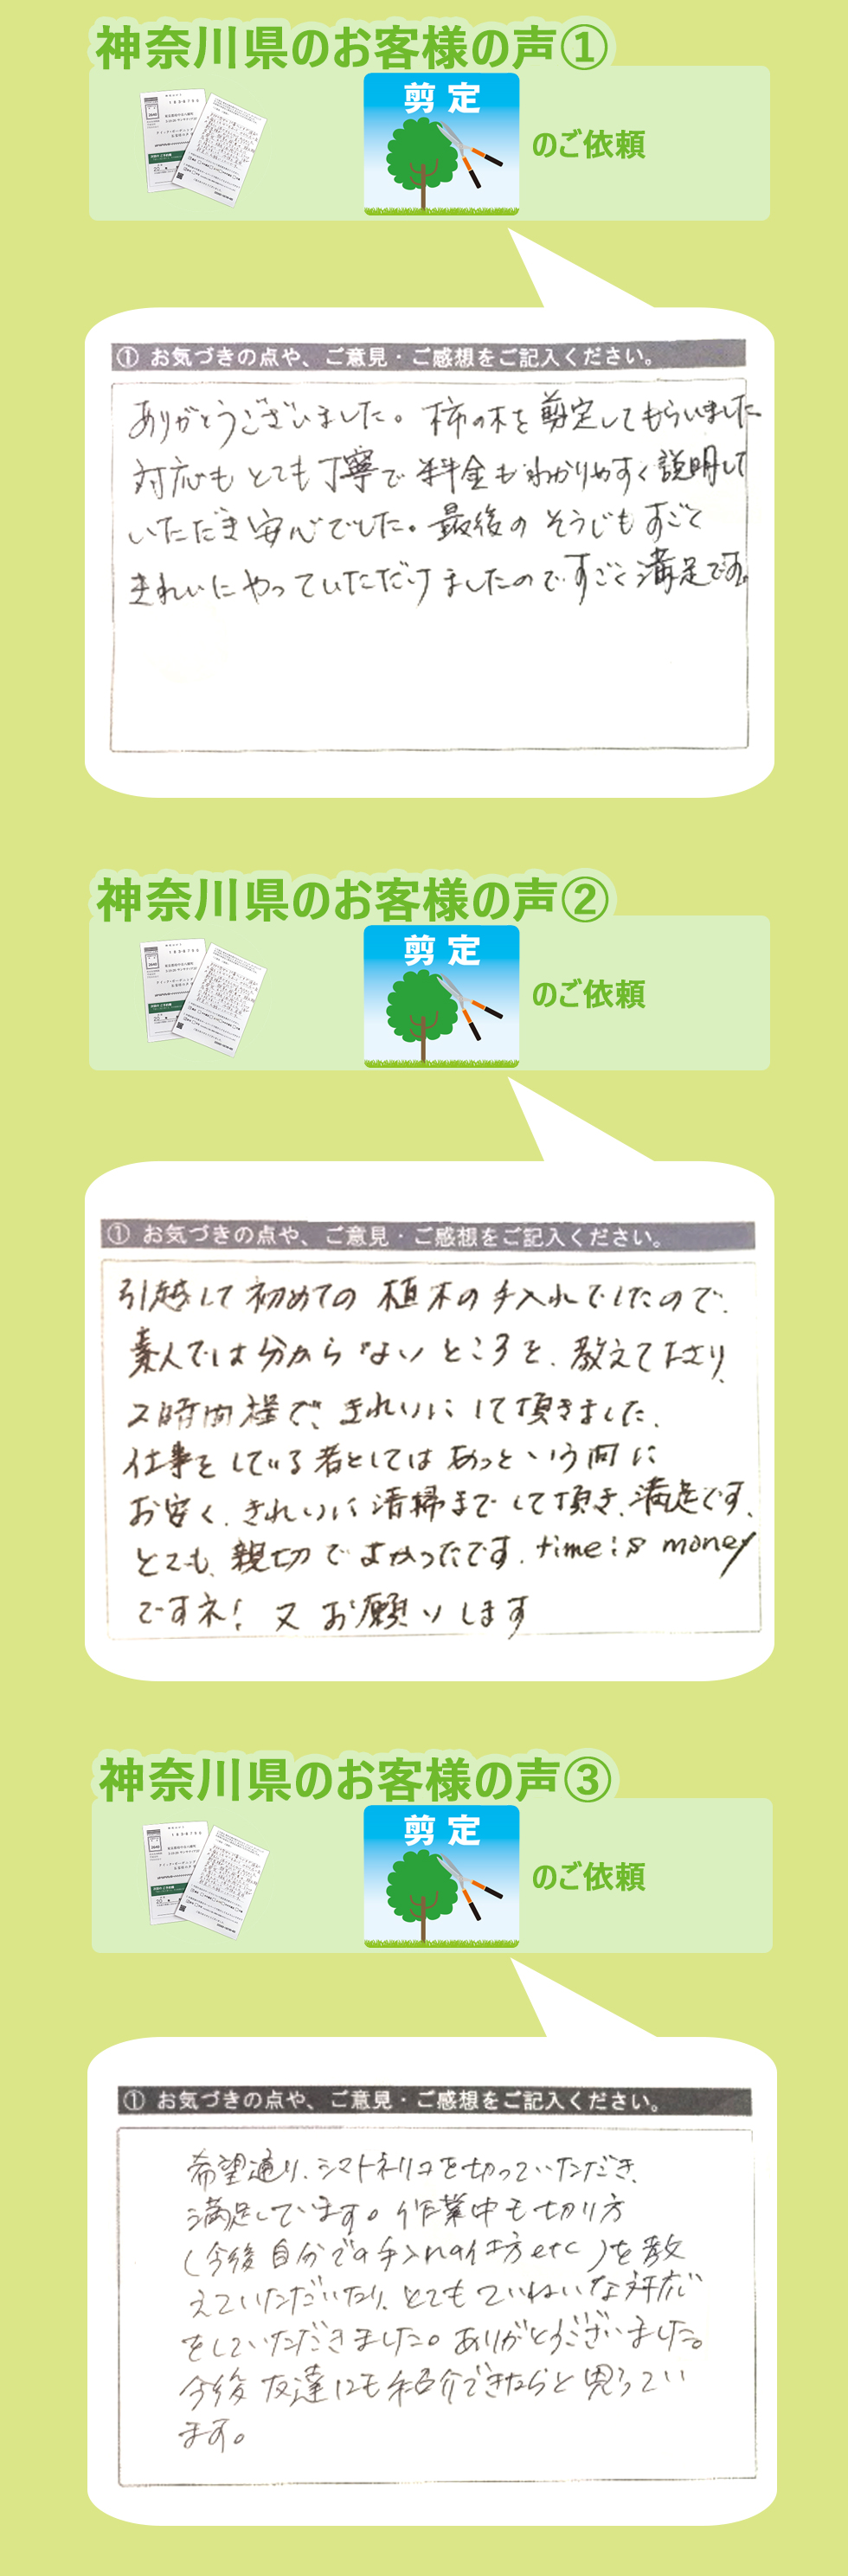 神奈川県で植木屋革命をご利用いただいたお客様の声